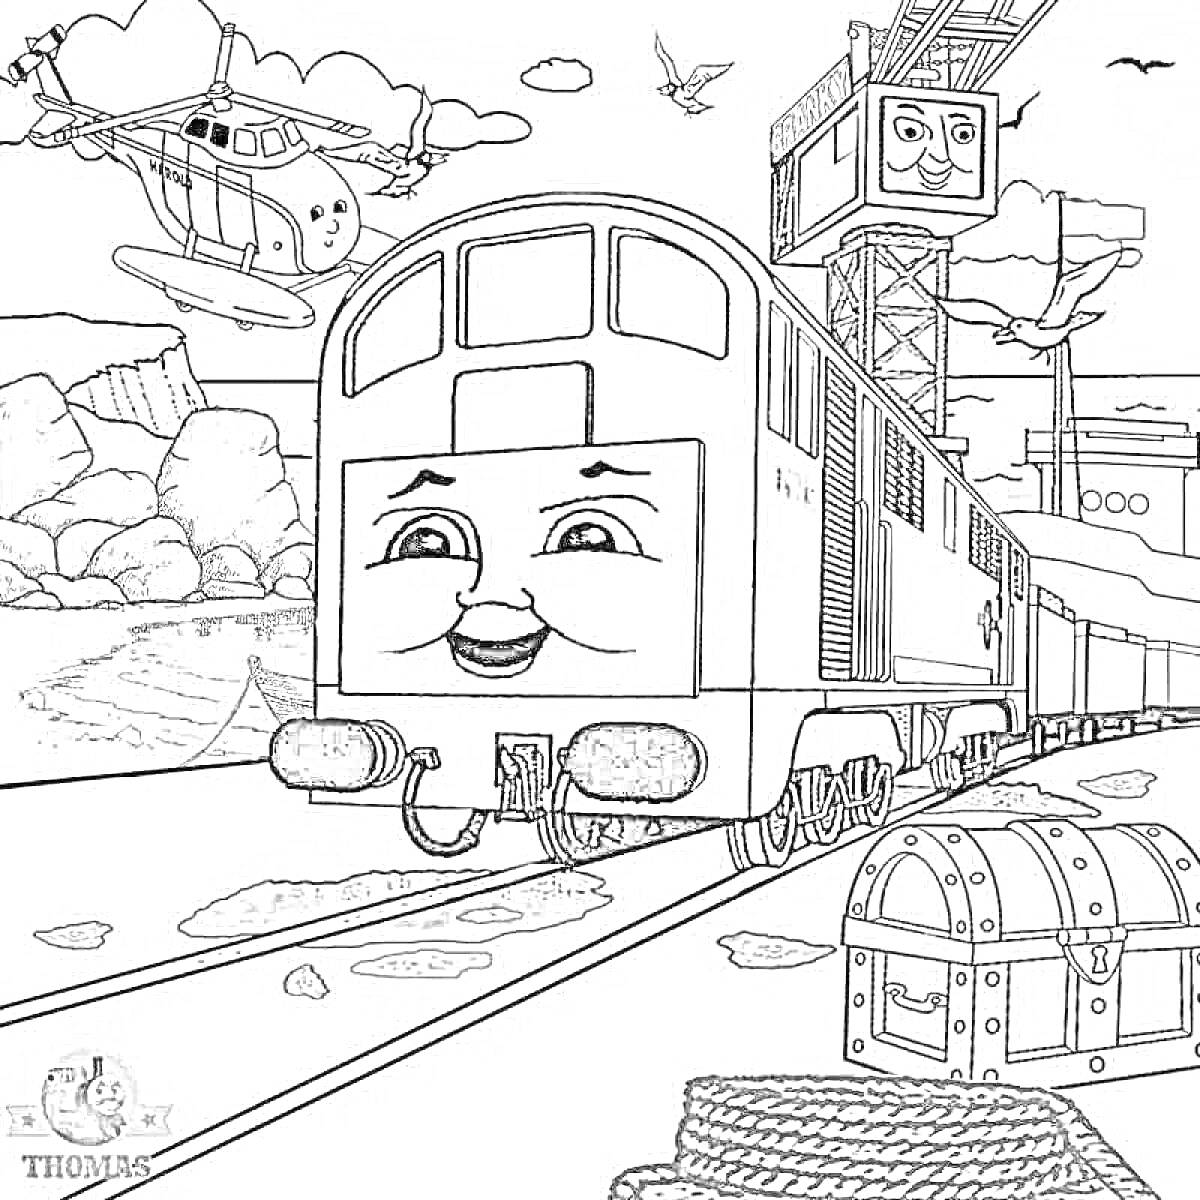 Раскраска Поезд с лицом на железной дороге, вертолет, сундук с сокровищами, канаты, кран с лицом, горы и птицы на заднем плане